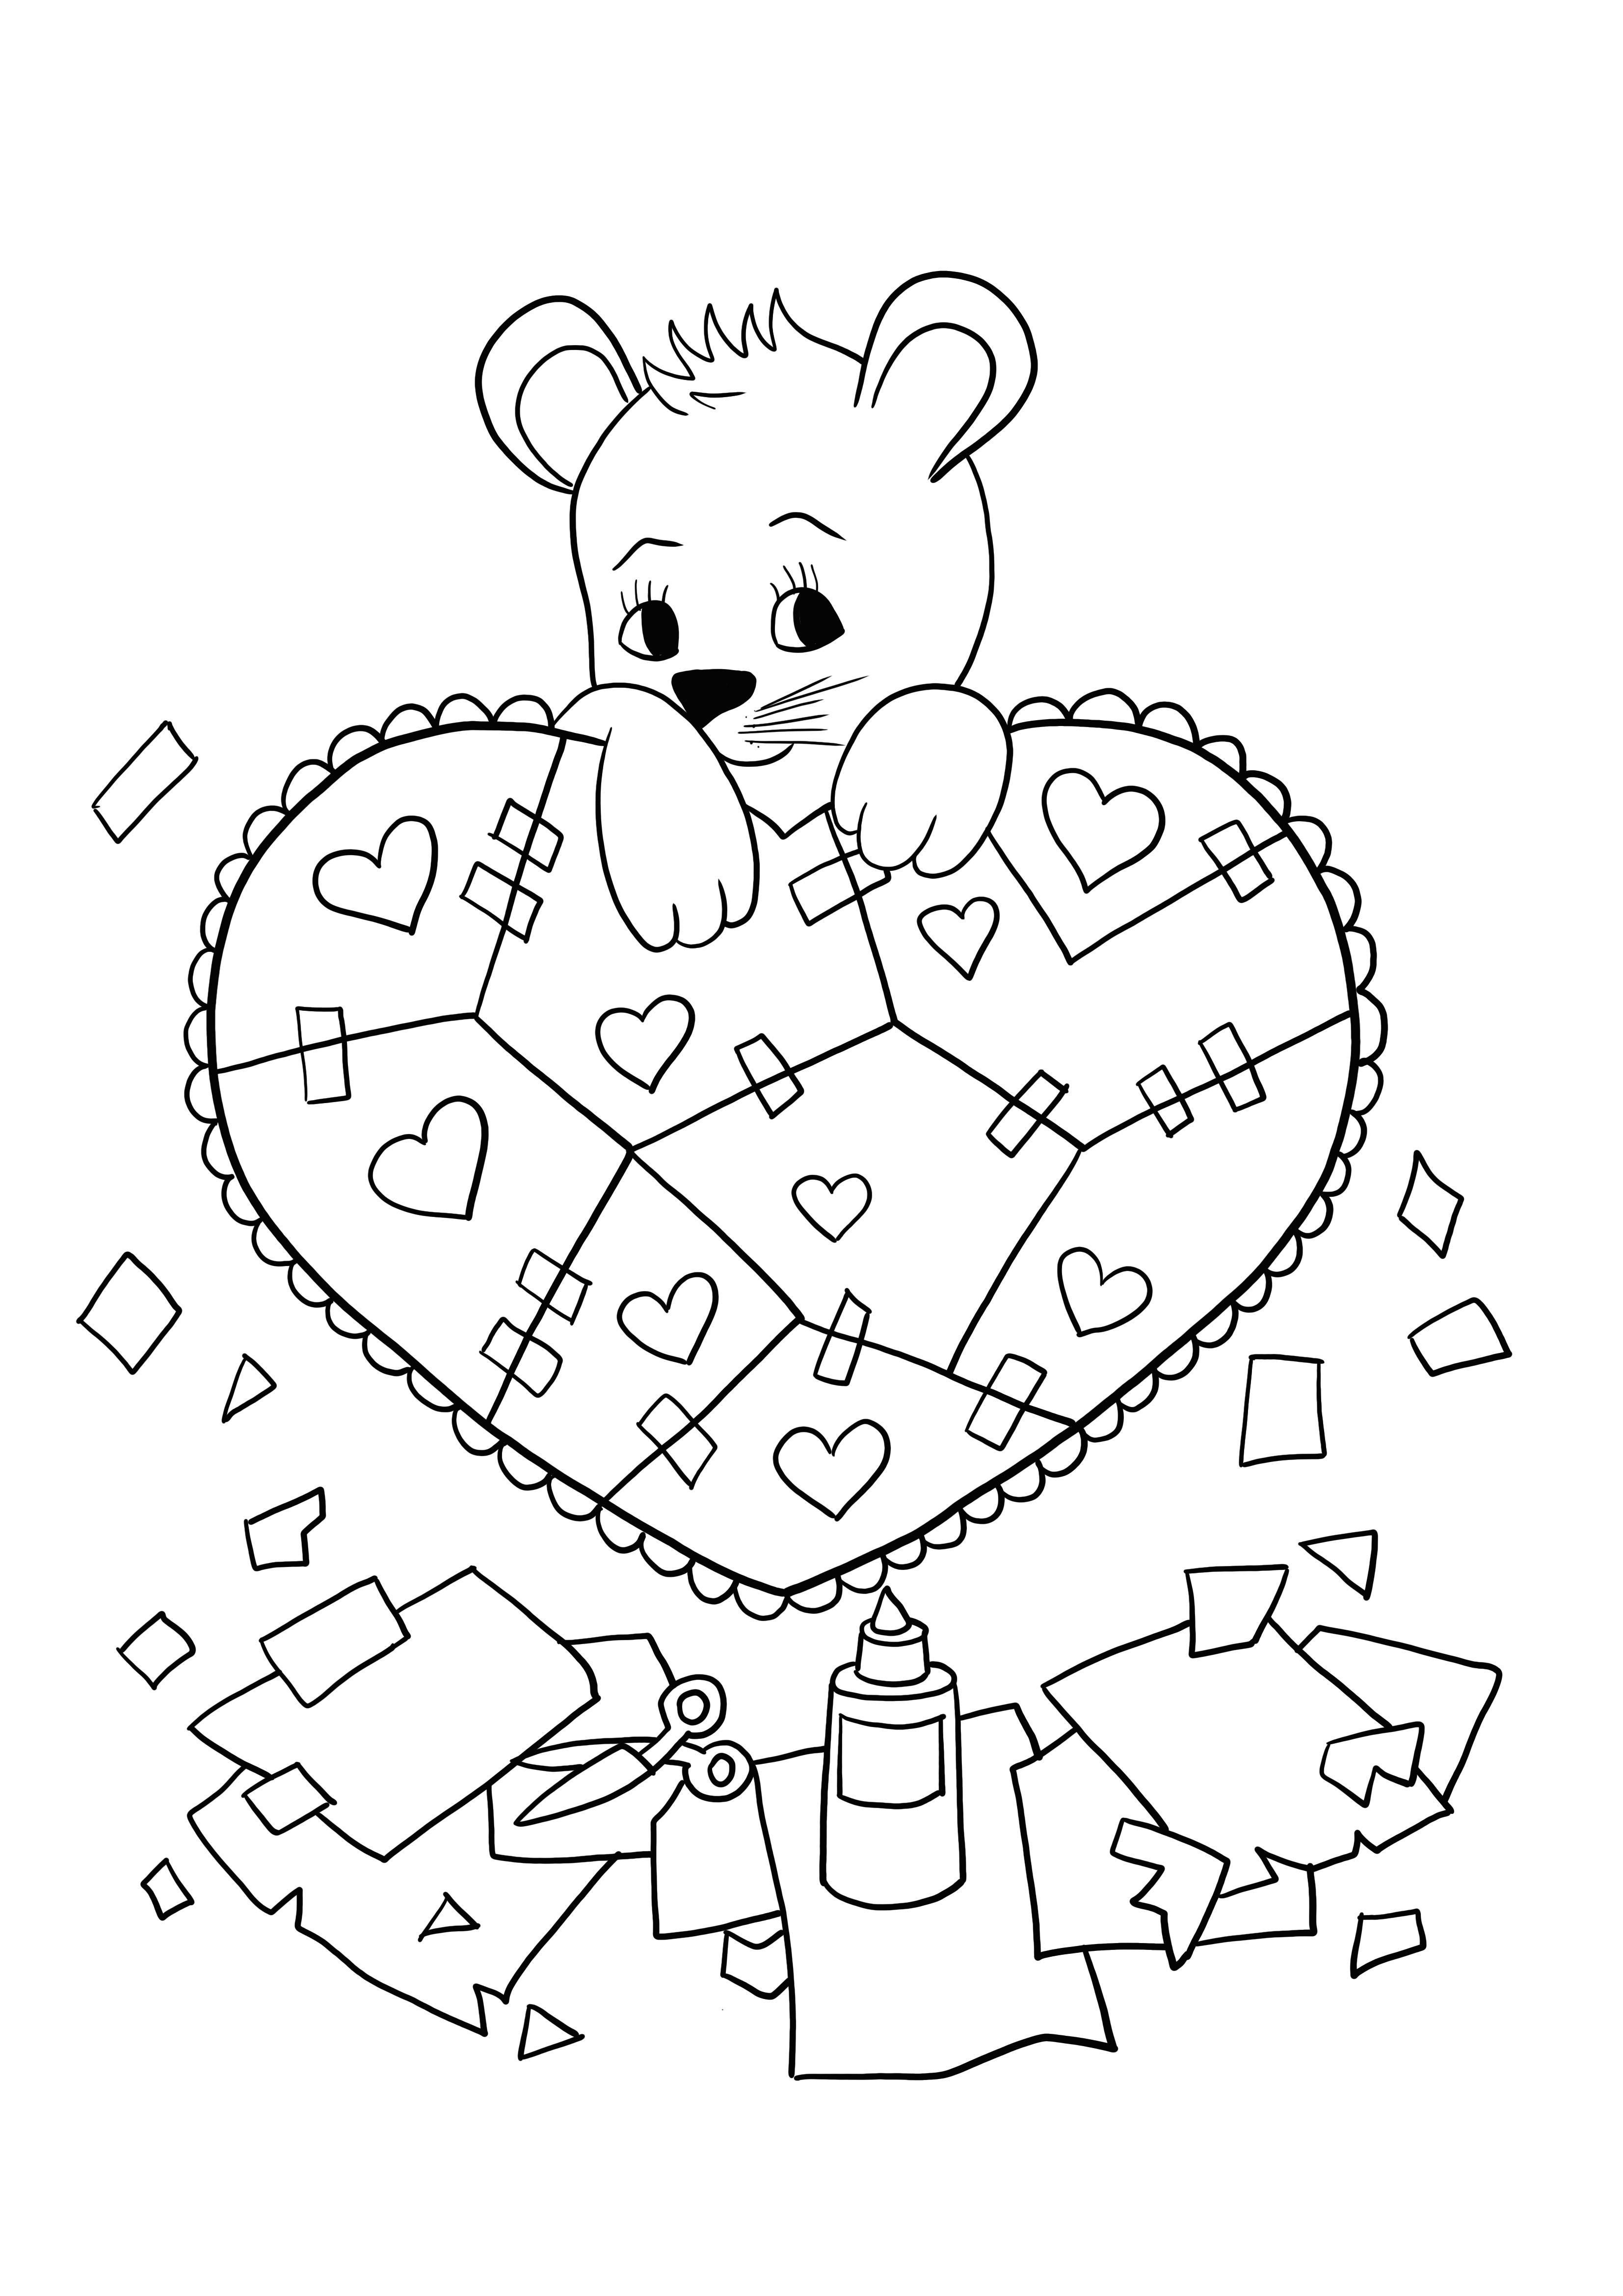 Kleurplaten van gebroken harten voor Valentijnsdag en gratis te printen afbeelding kleurplaat